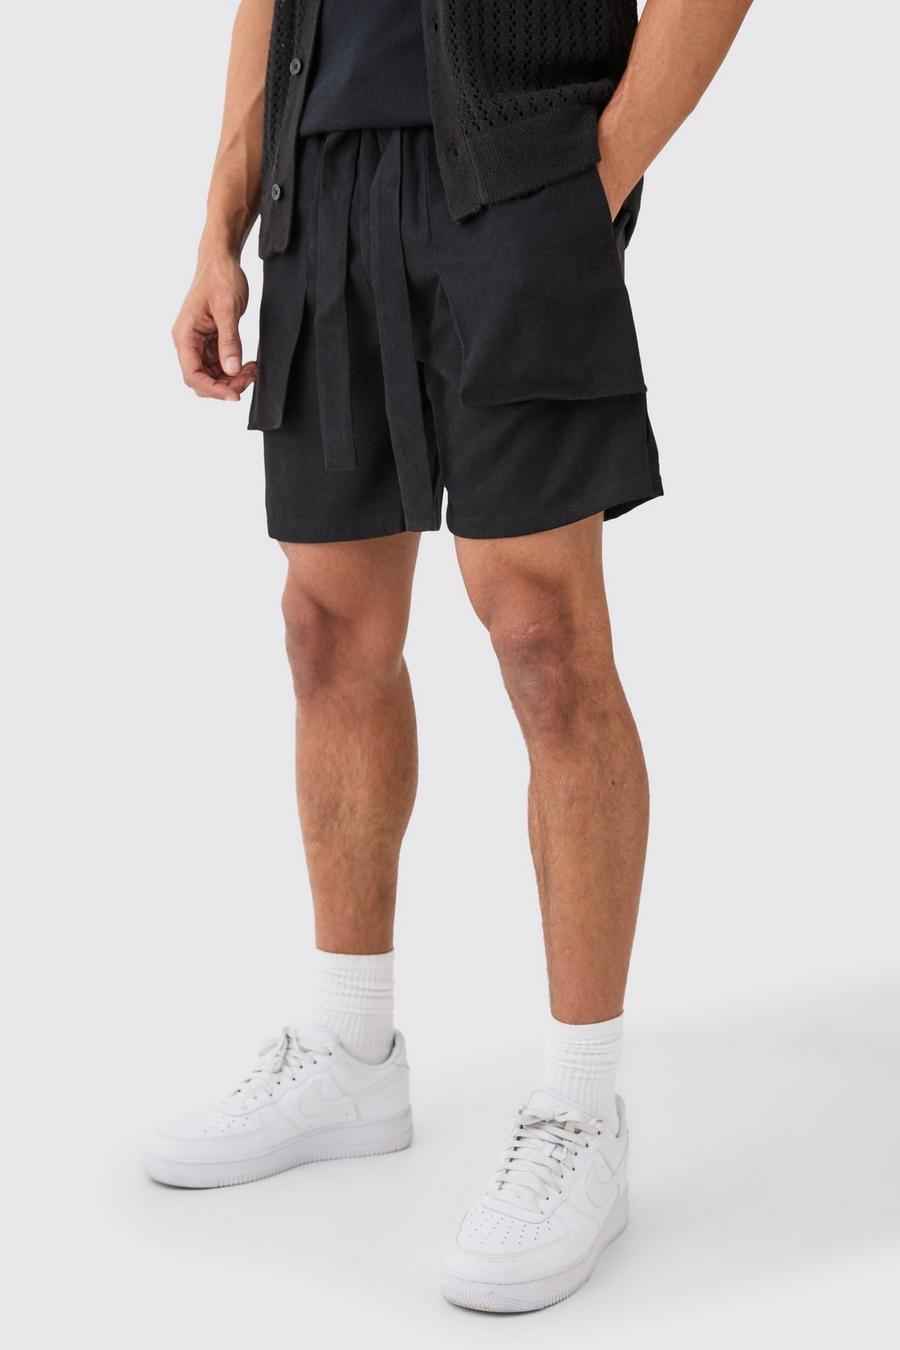 Lockere Shorts mit elastischem Bund, Black